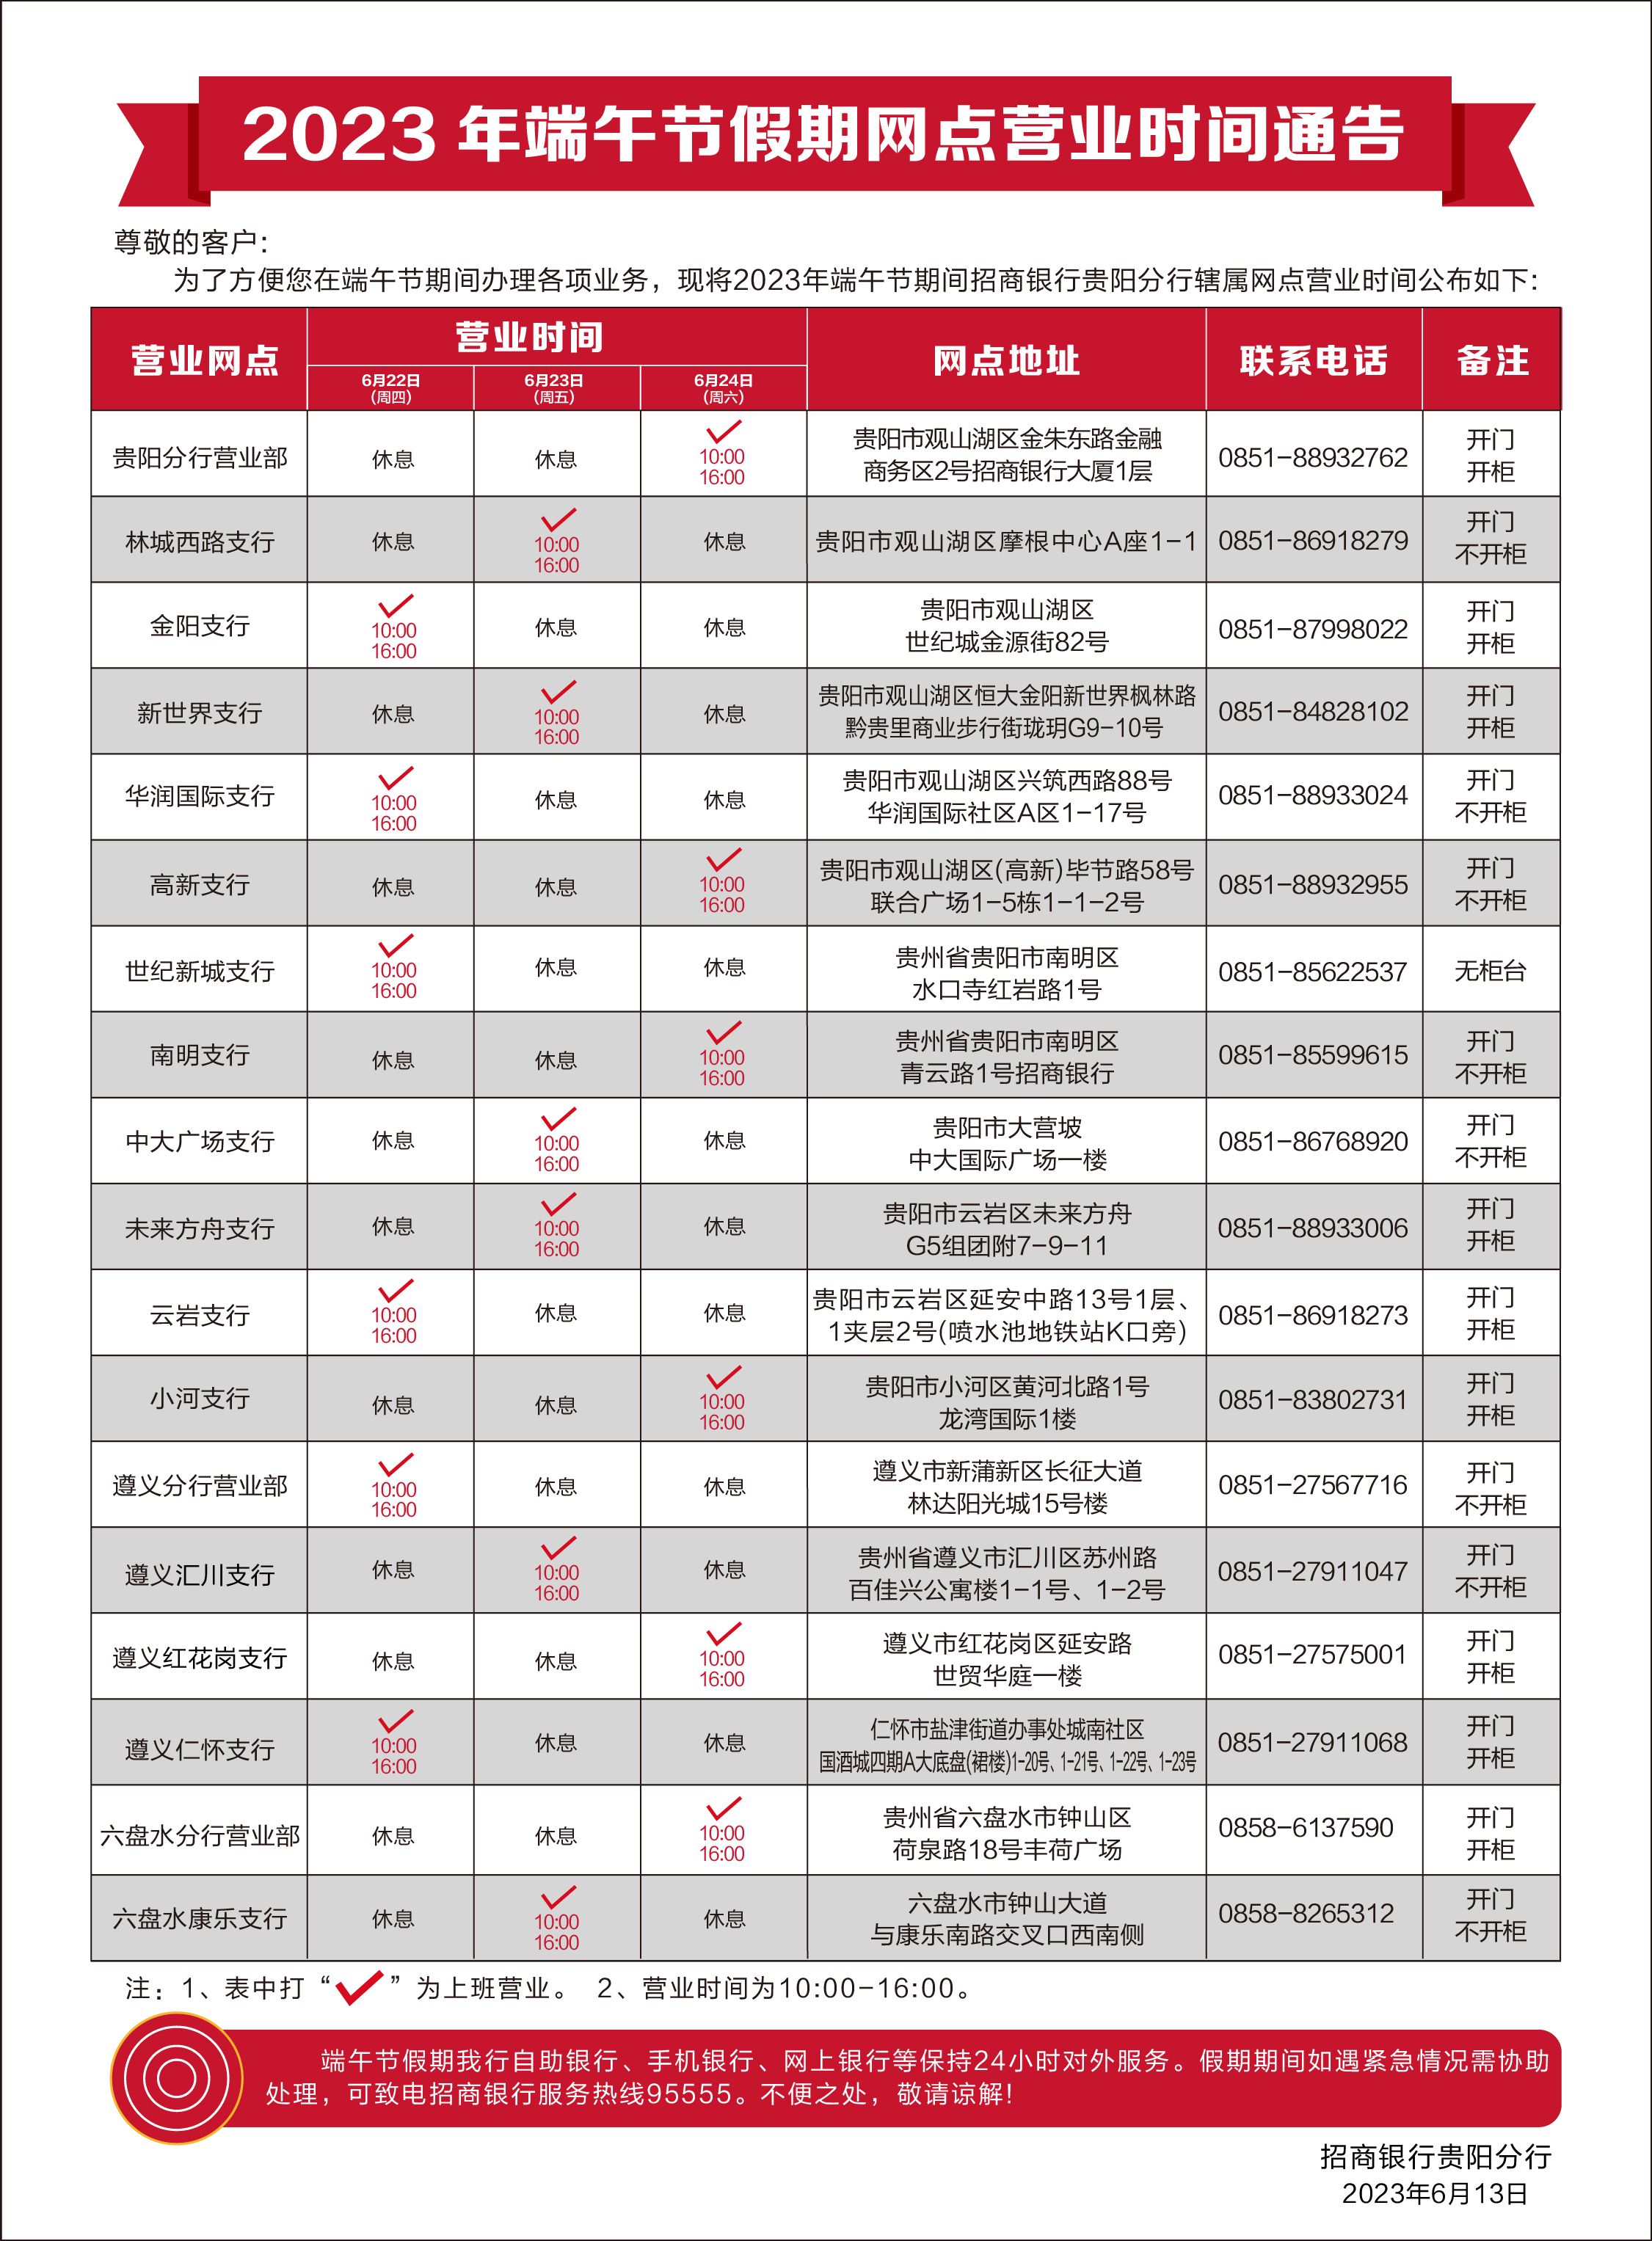 附件：招商银行贵阳分行2023年端午节期间营业网点安排表.jpg